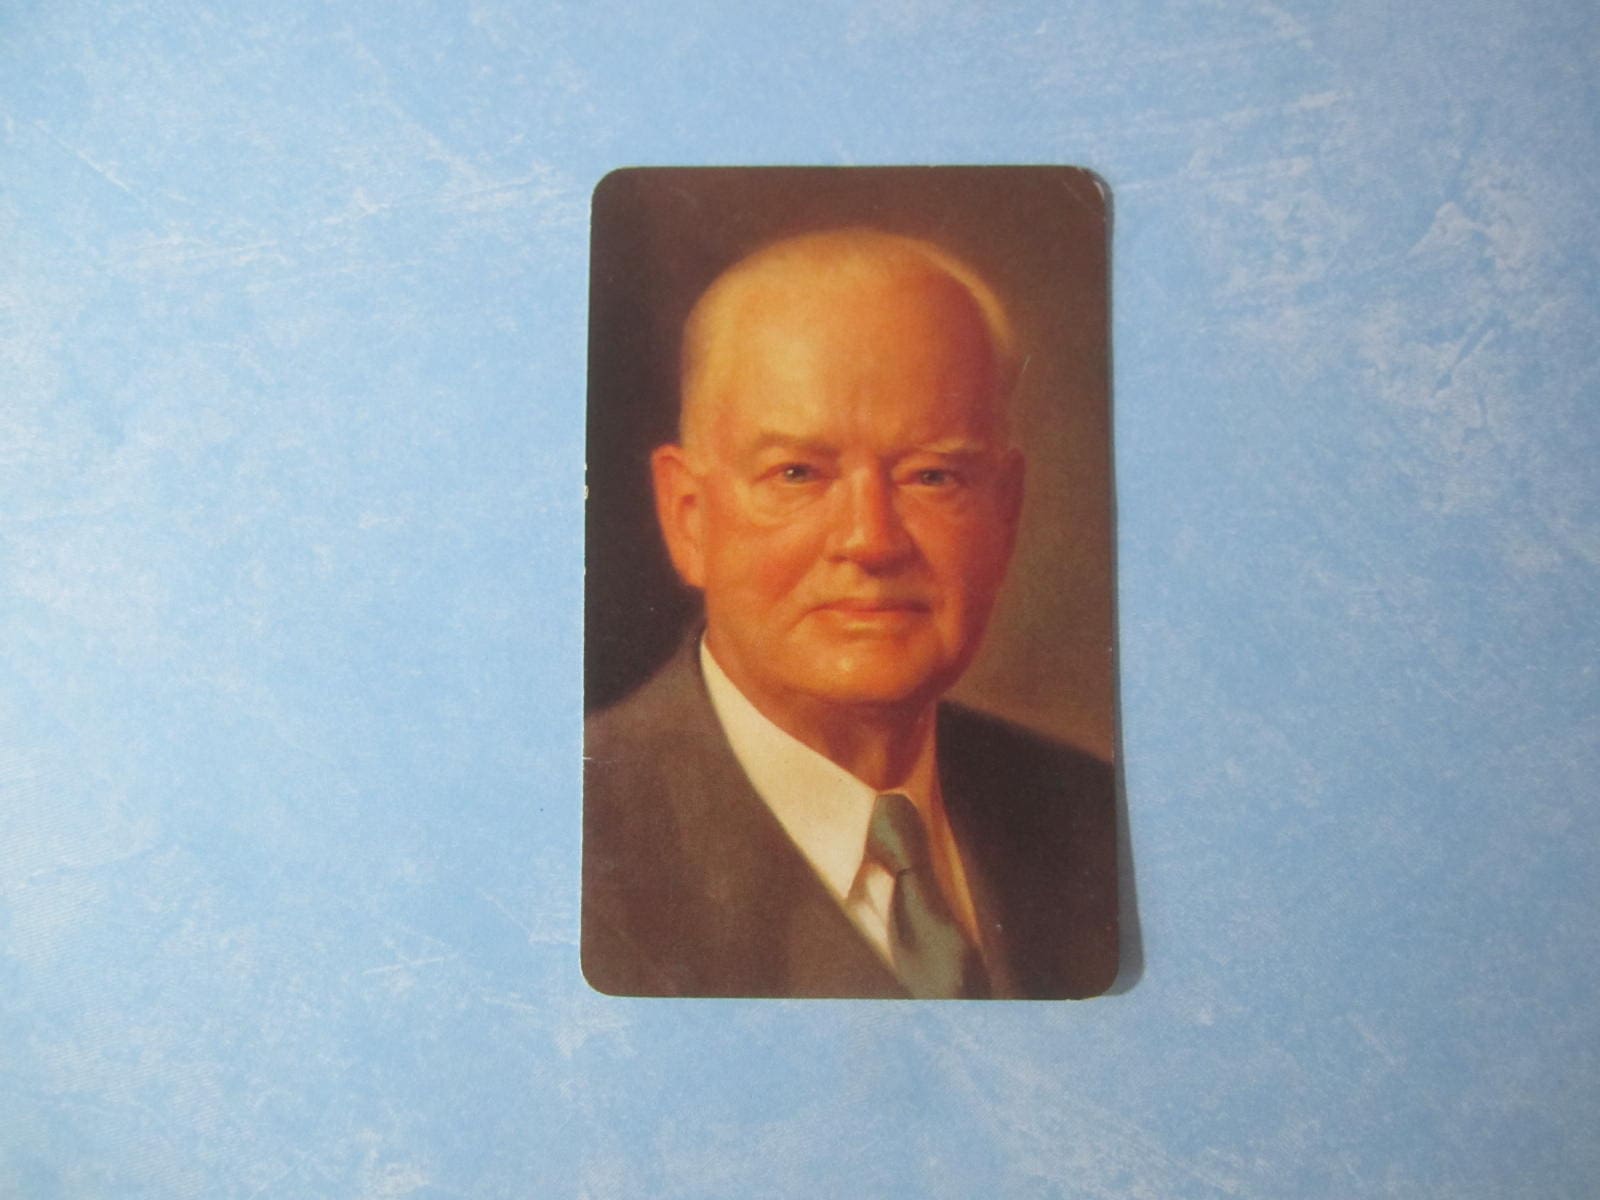 Herbert Hoover Fax Pax Card